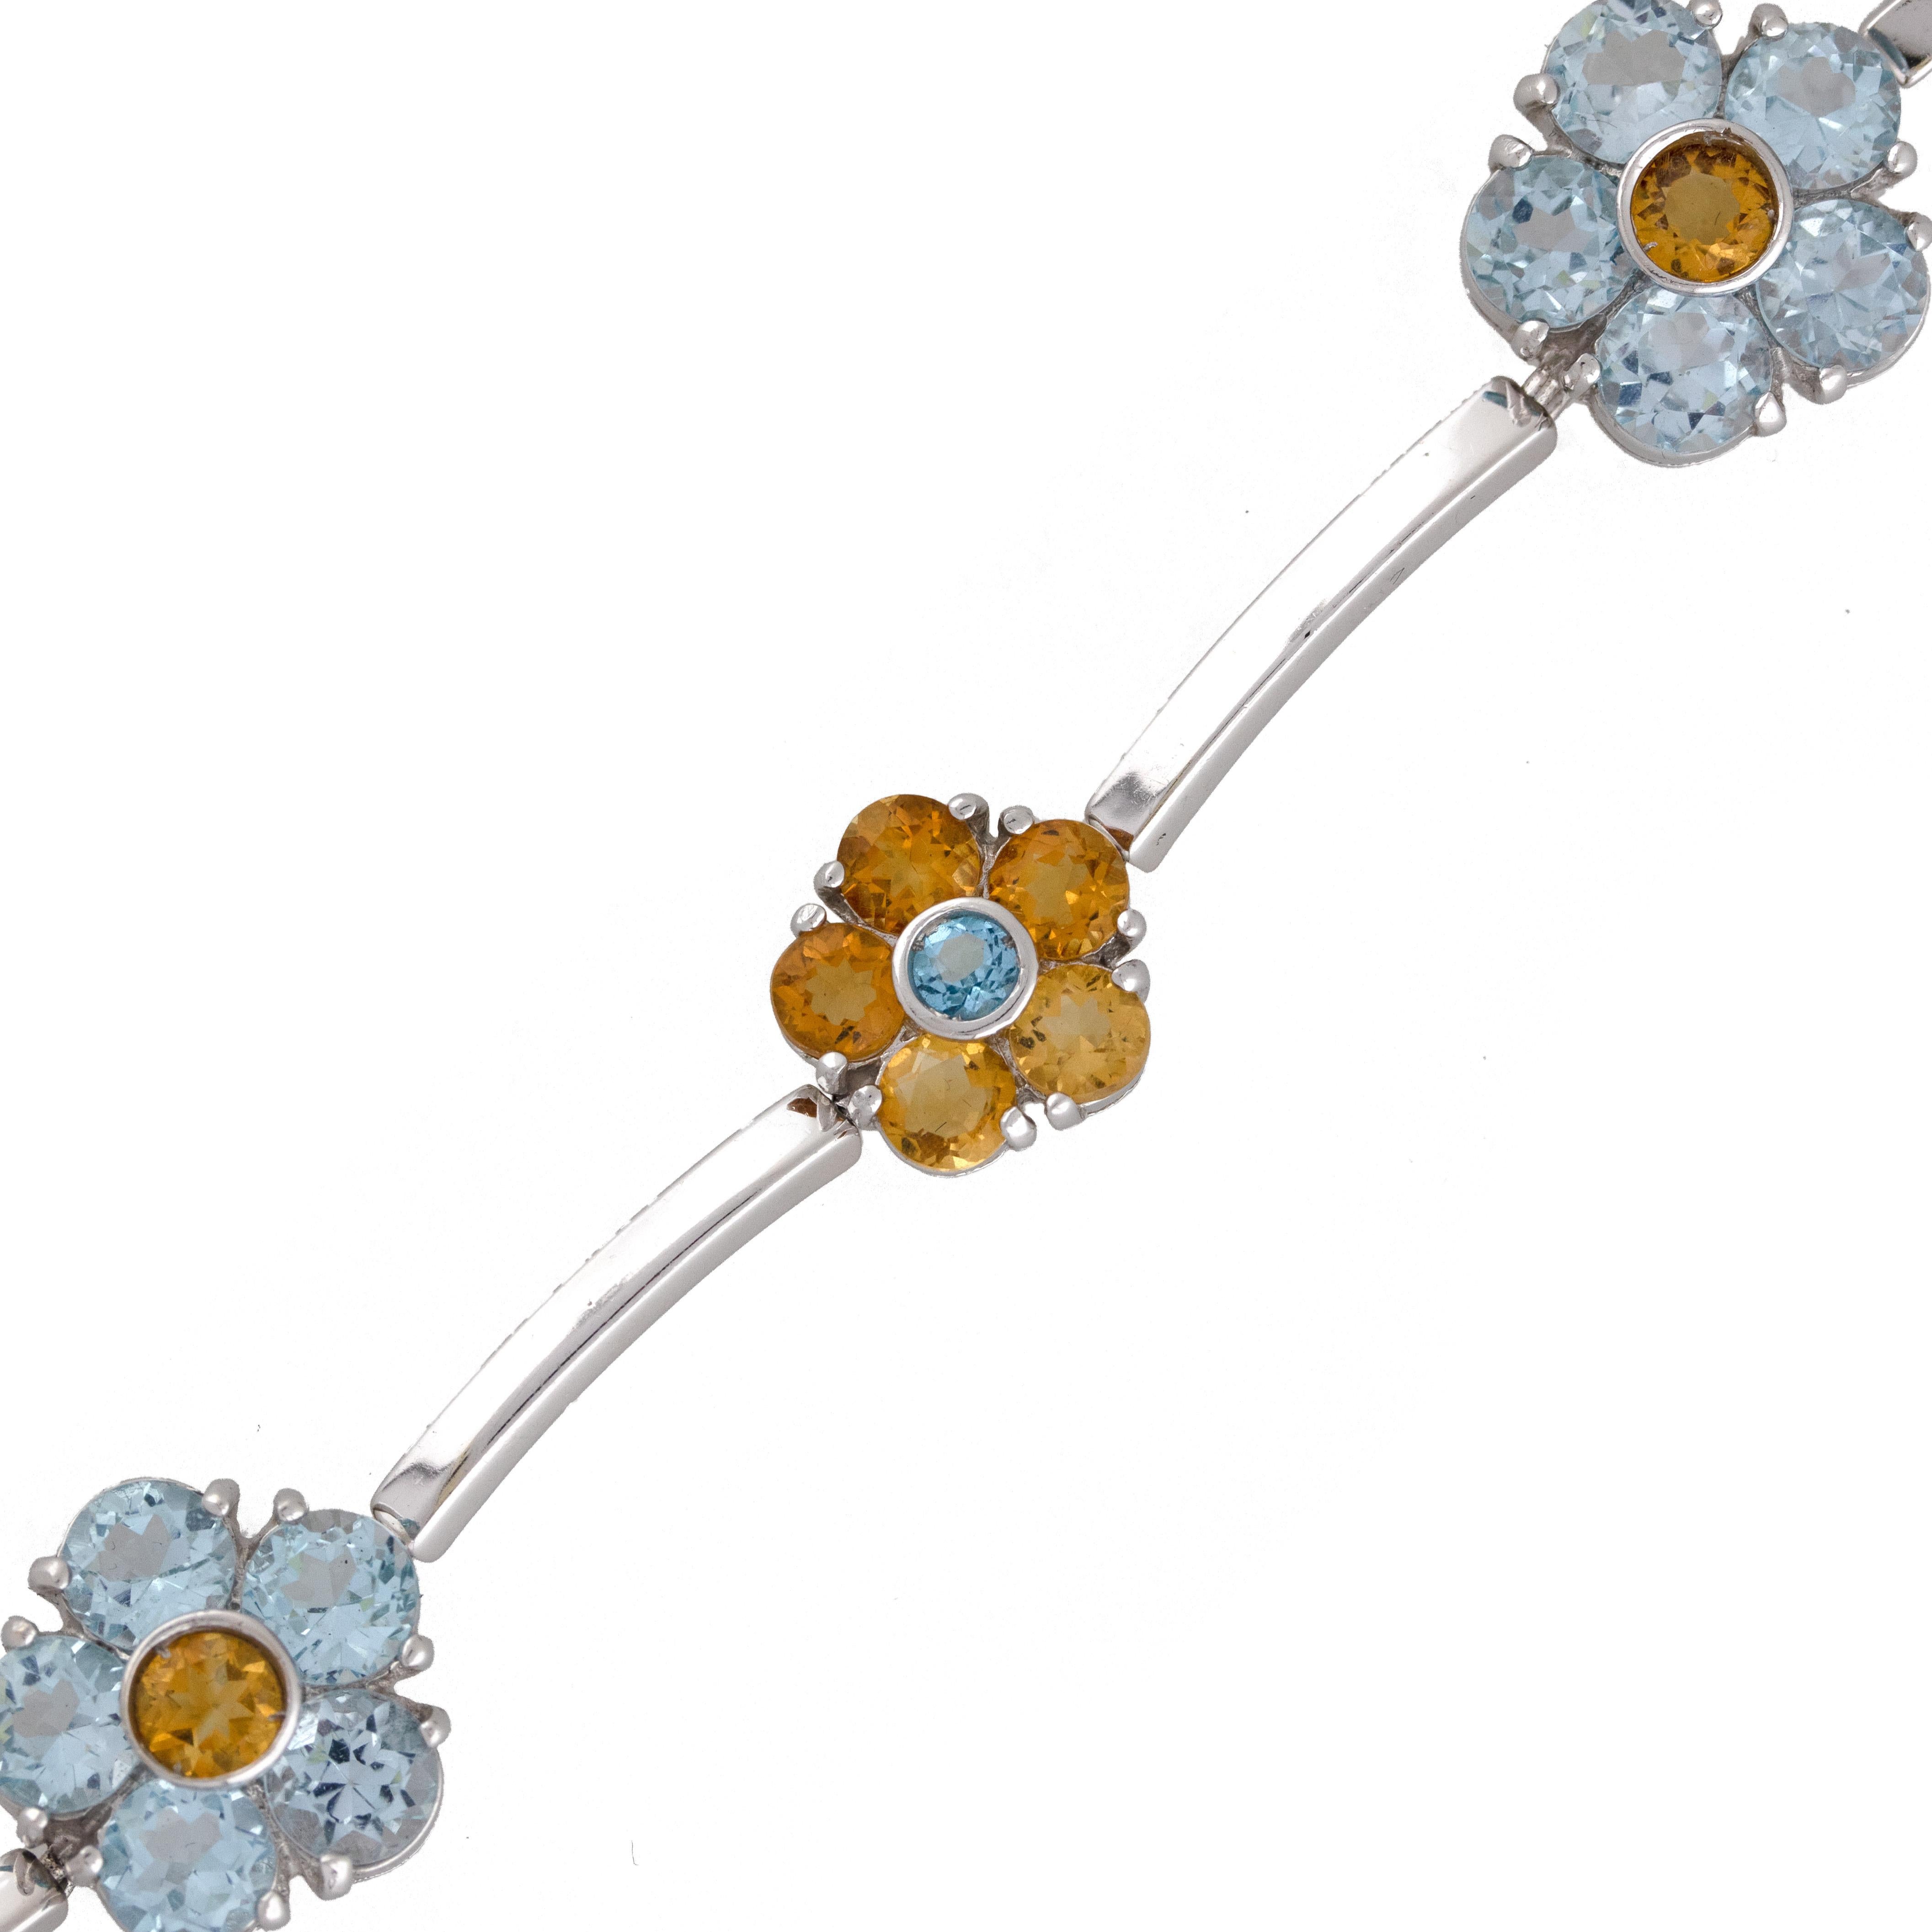 Material: 18k White Gold
Gemstone Details: Topaz and Citrine
Bracelet Length: 7